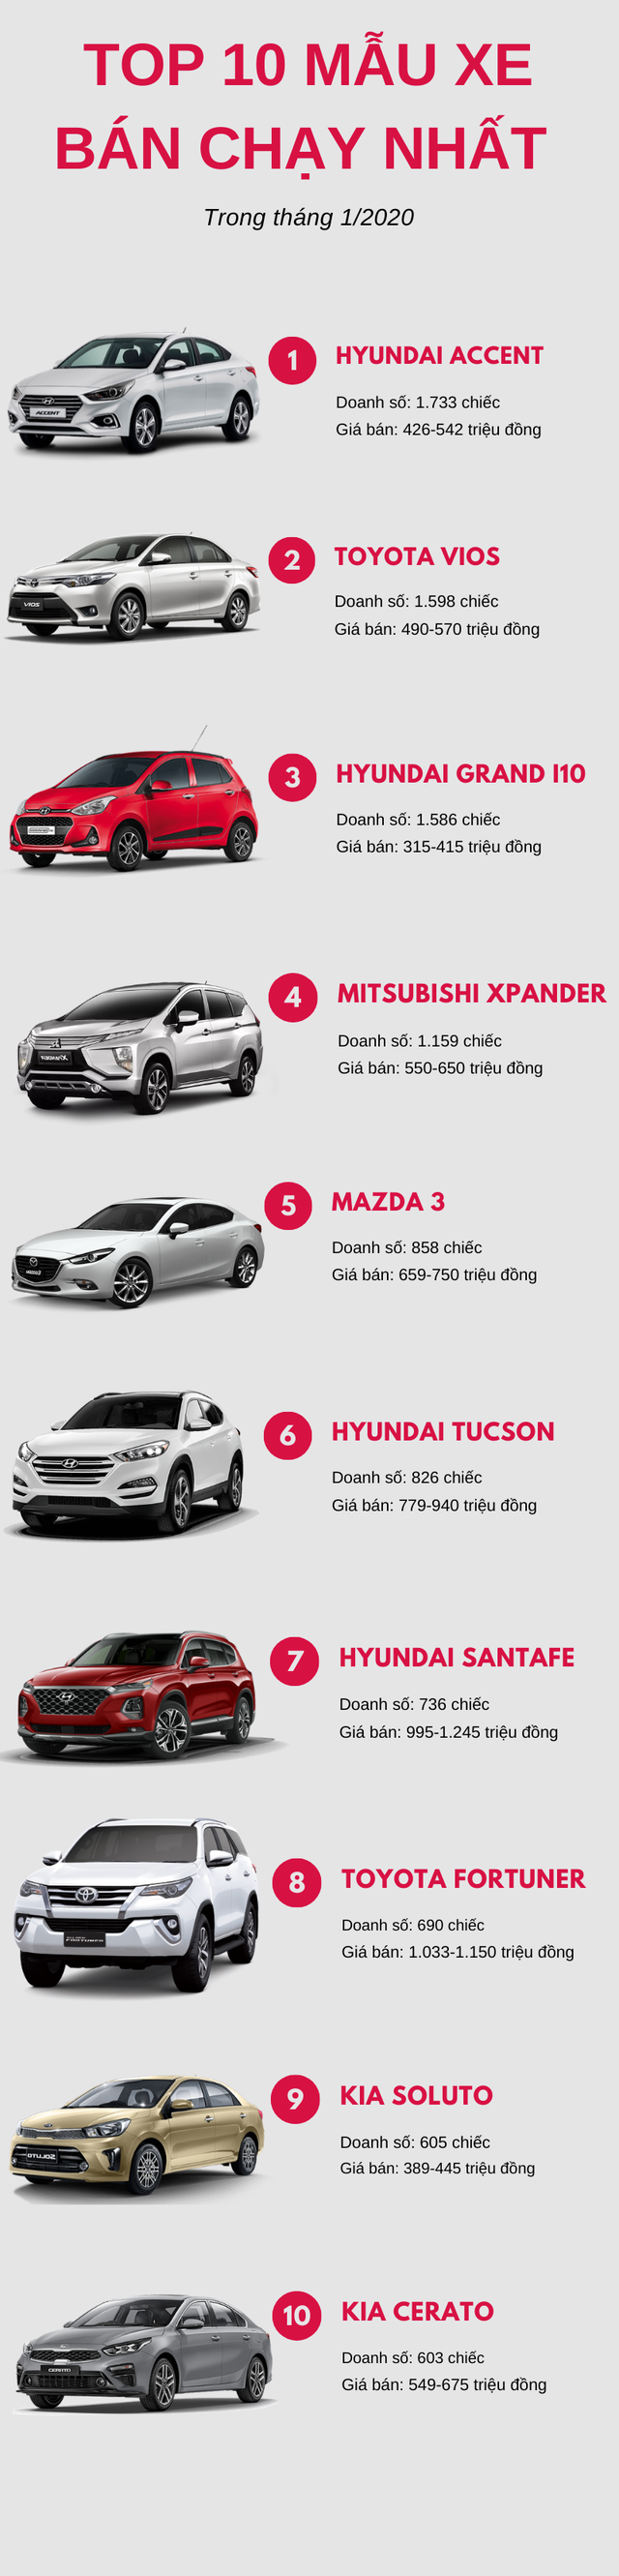 Top 10 ô tô bán chạy nhất tháng 1/2020: Hyundai góp mặt 4 mẫu xe, Mitsubishi Xpander bất ngờ tụt hạng - Ảnh 1.